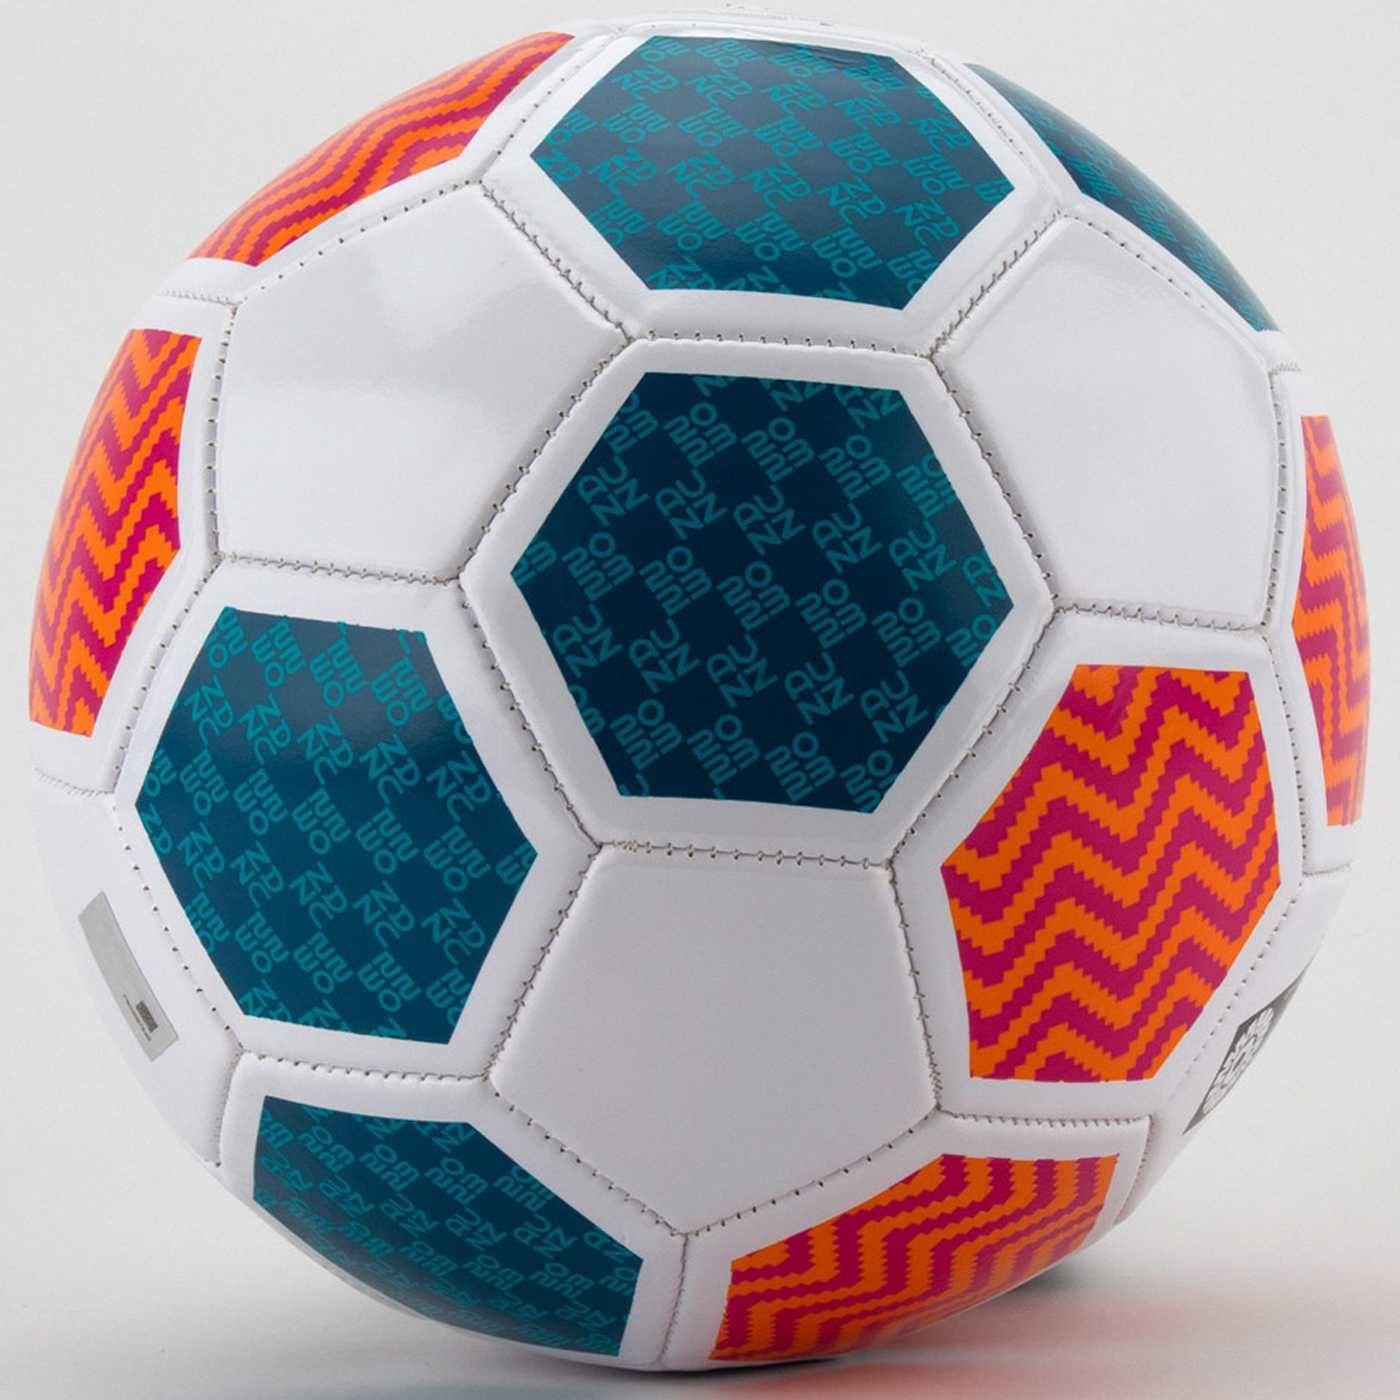 Oficjalna piłka nożna FIFA do nogi mistrzowska WWC rozmiar 5 lekka